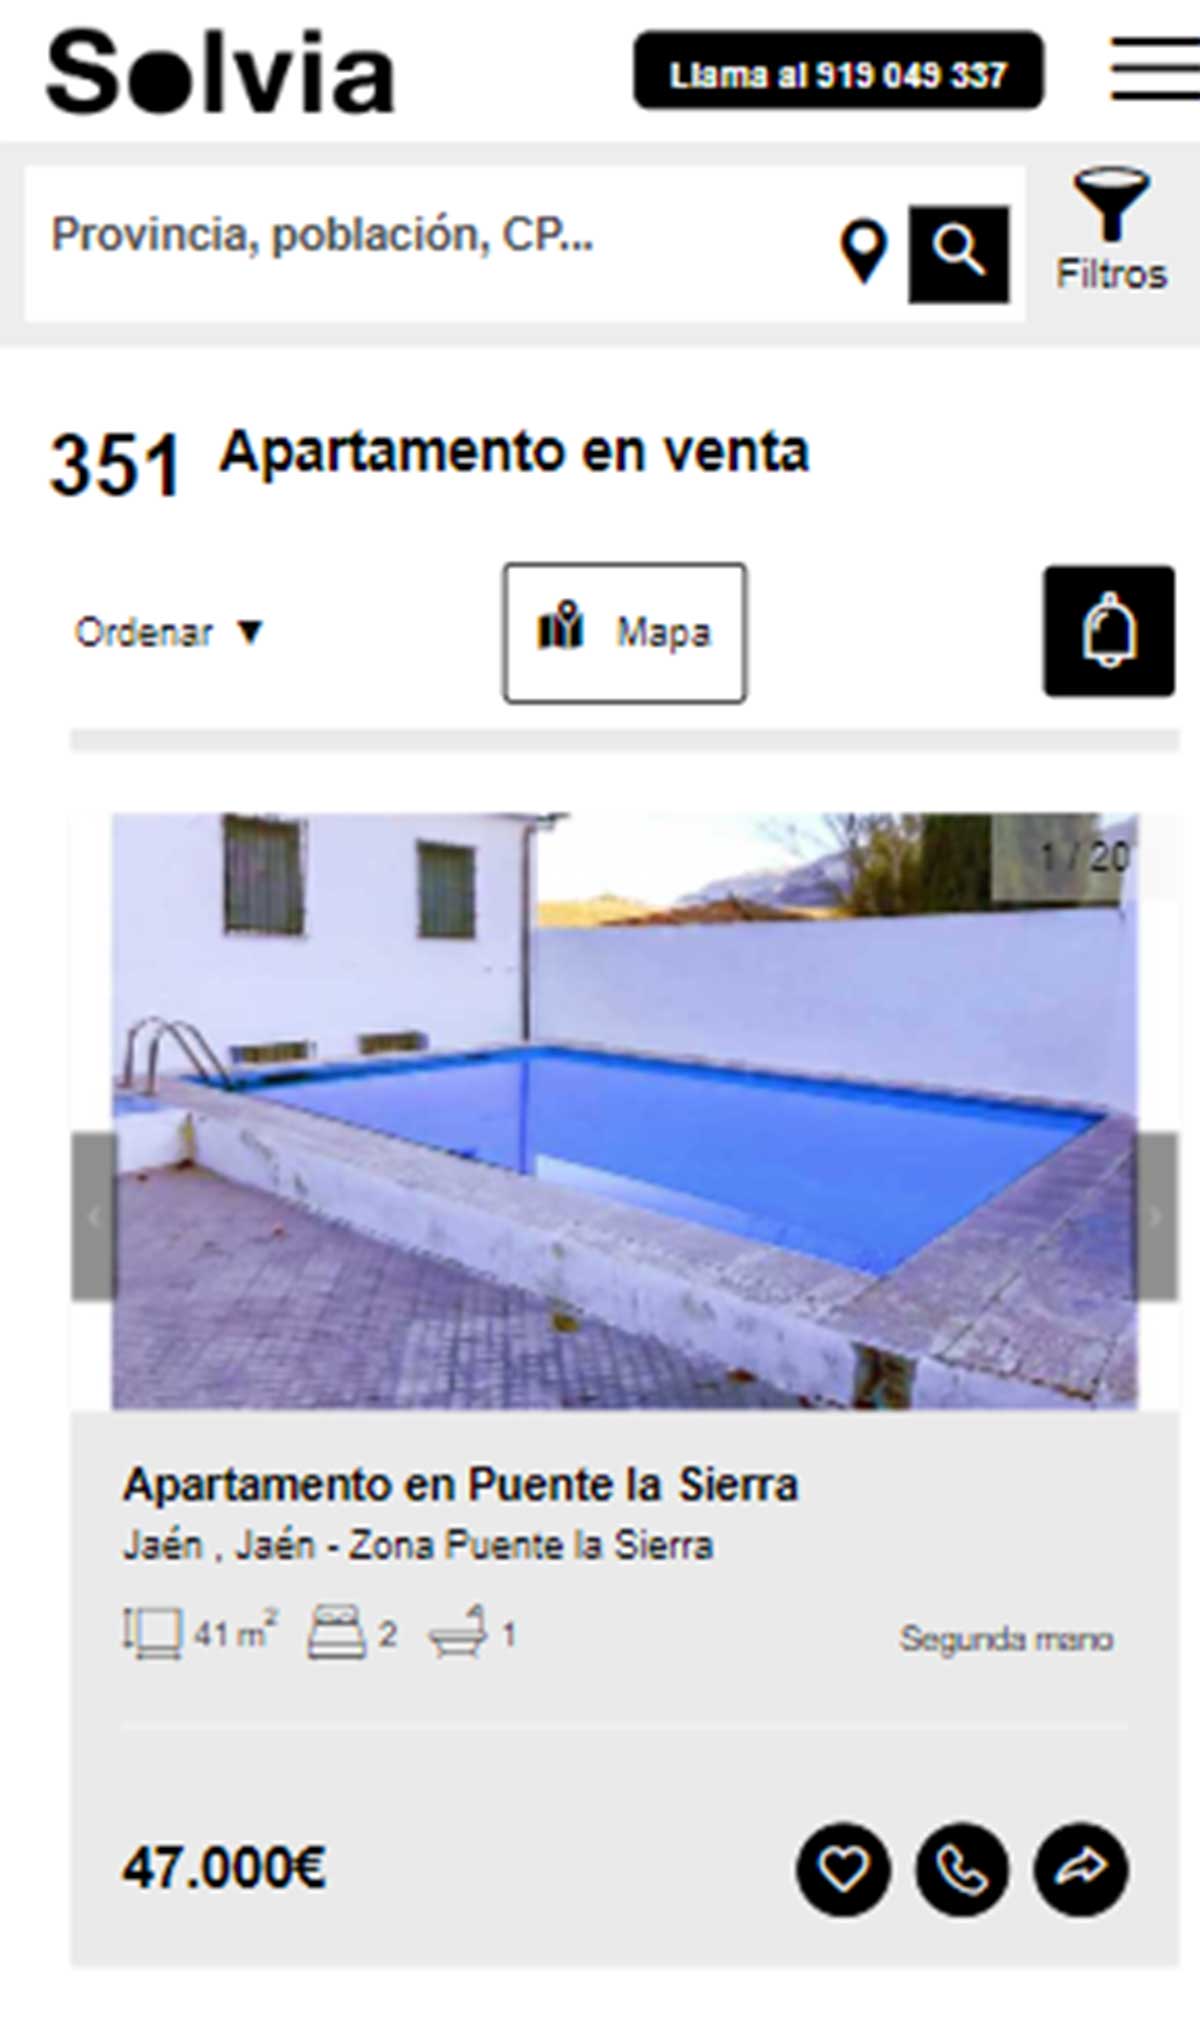 Apartamento a la venta por 47.000 euros